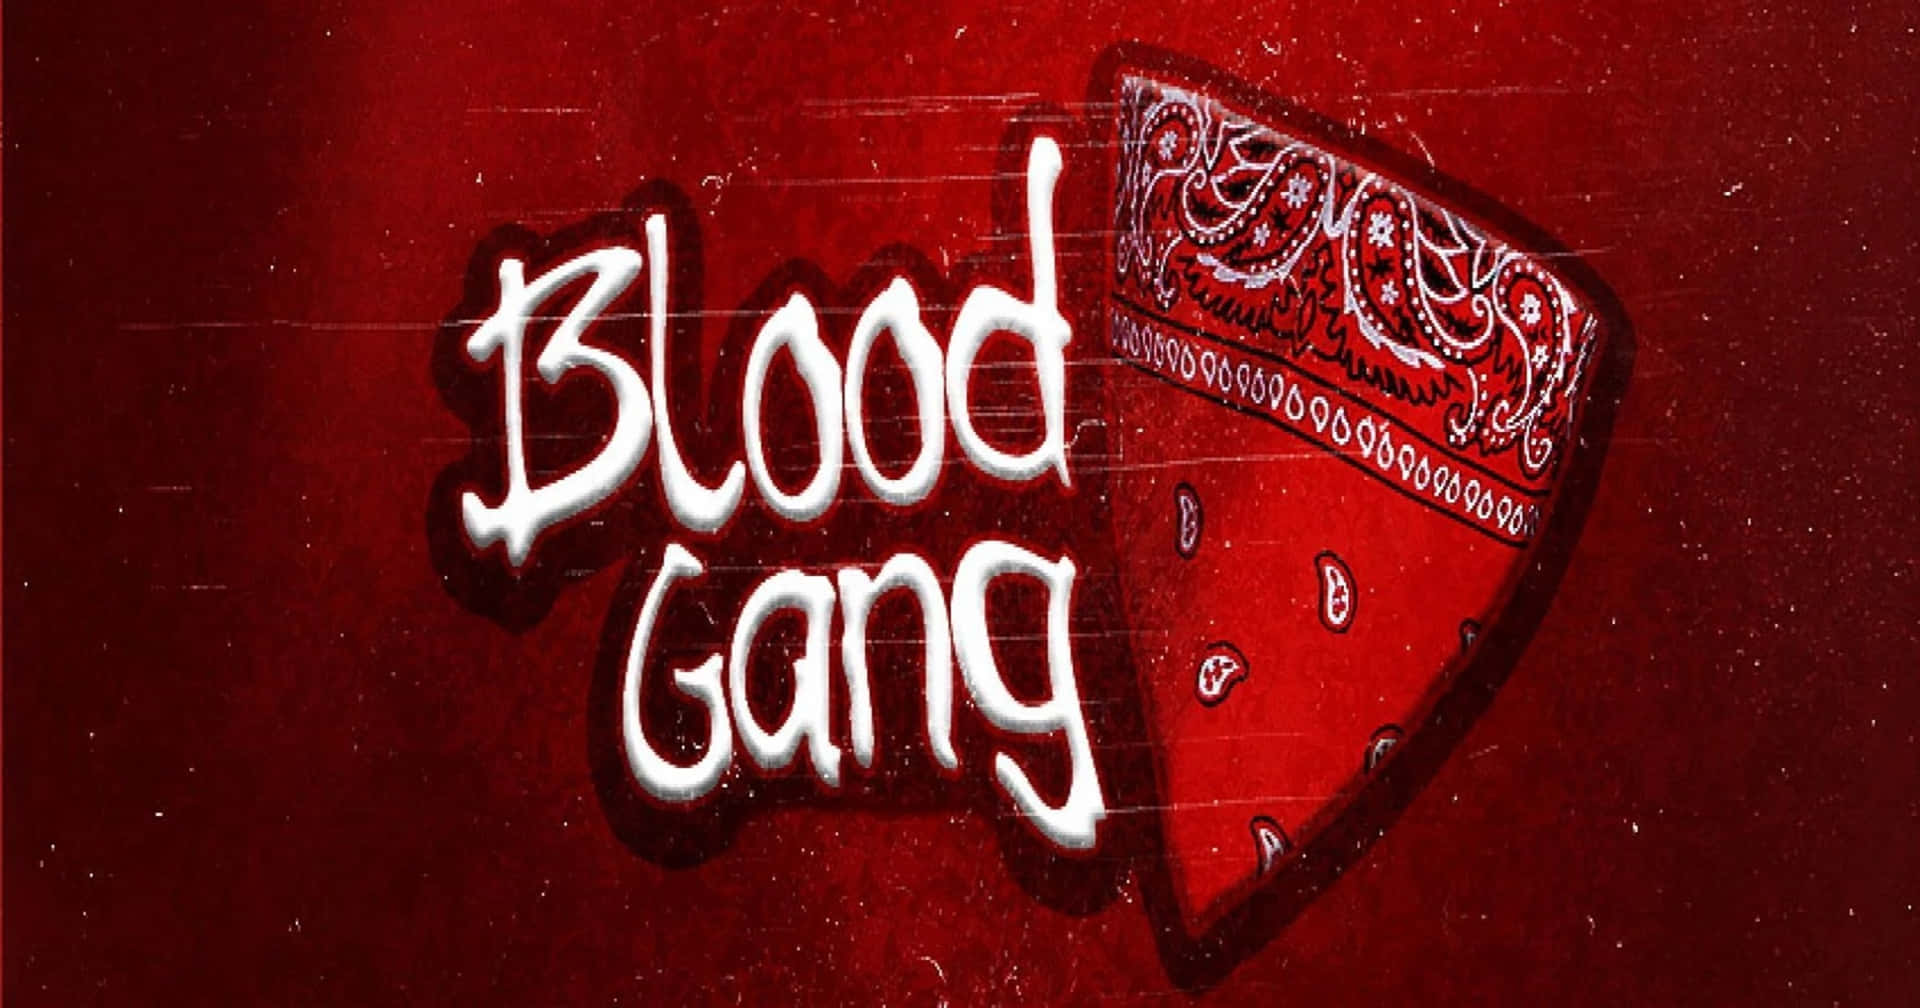 blood-gang-3dpye5b2eokbd1yk.jpg